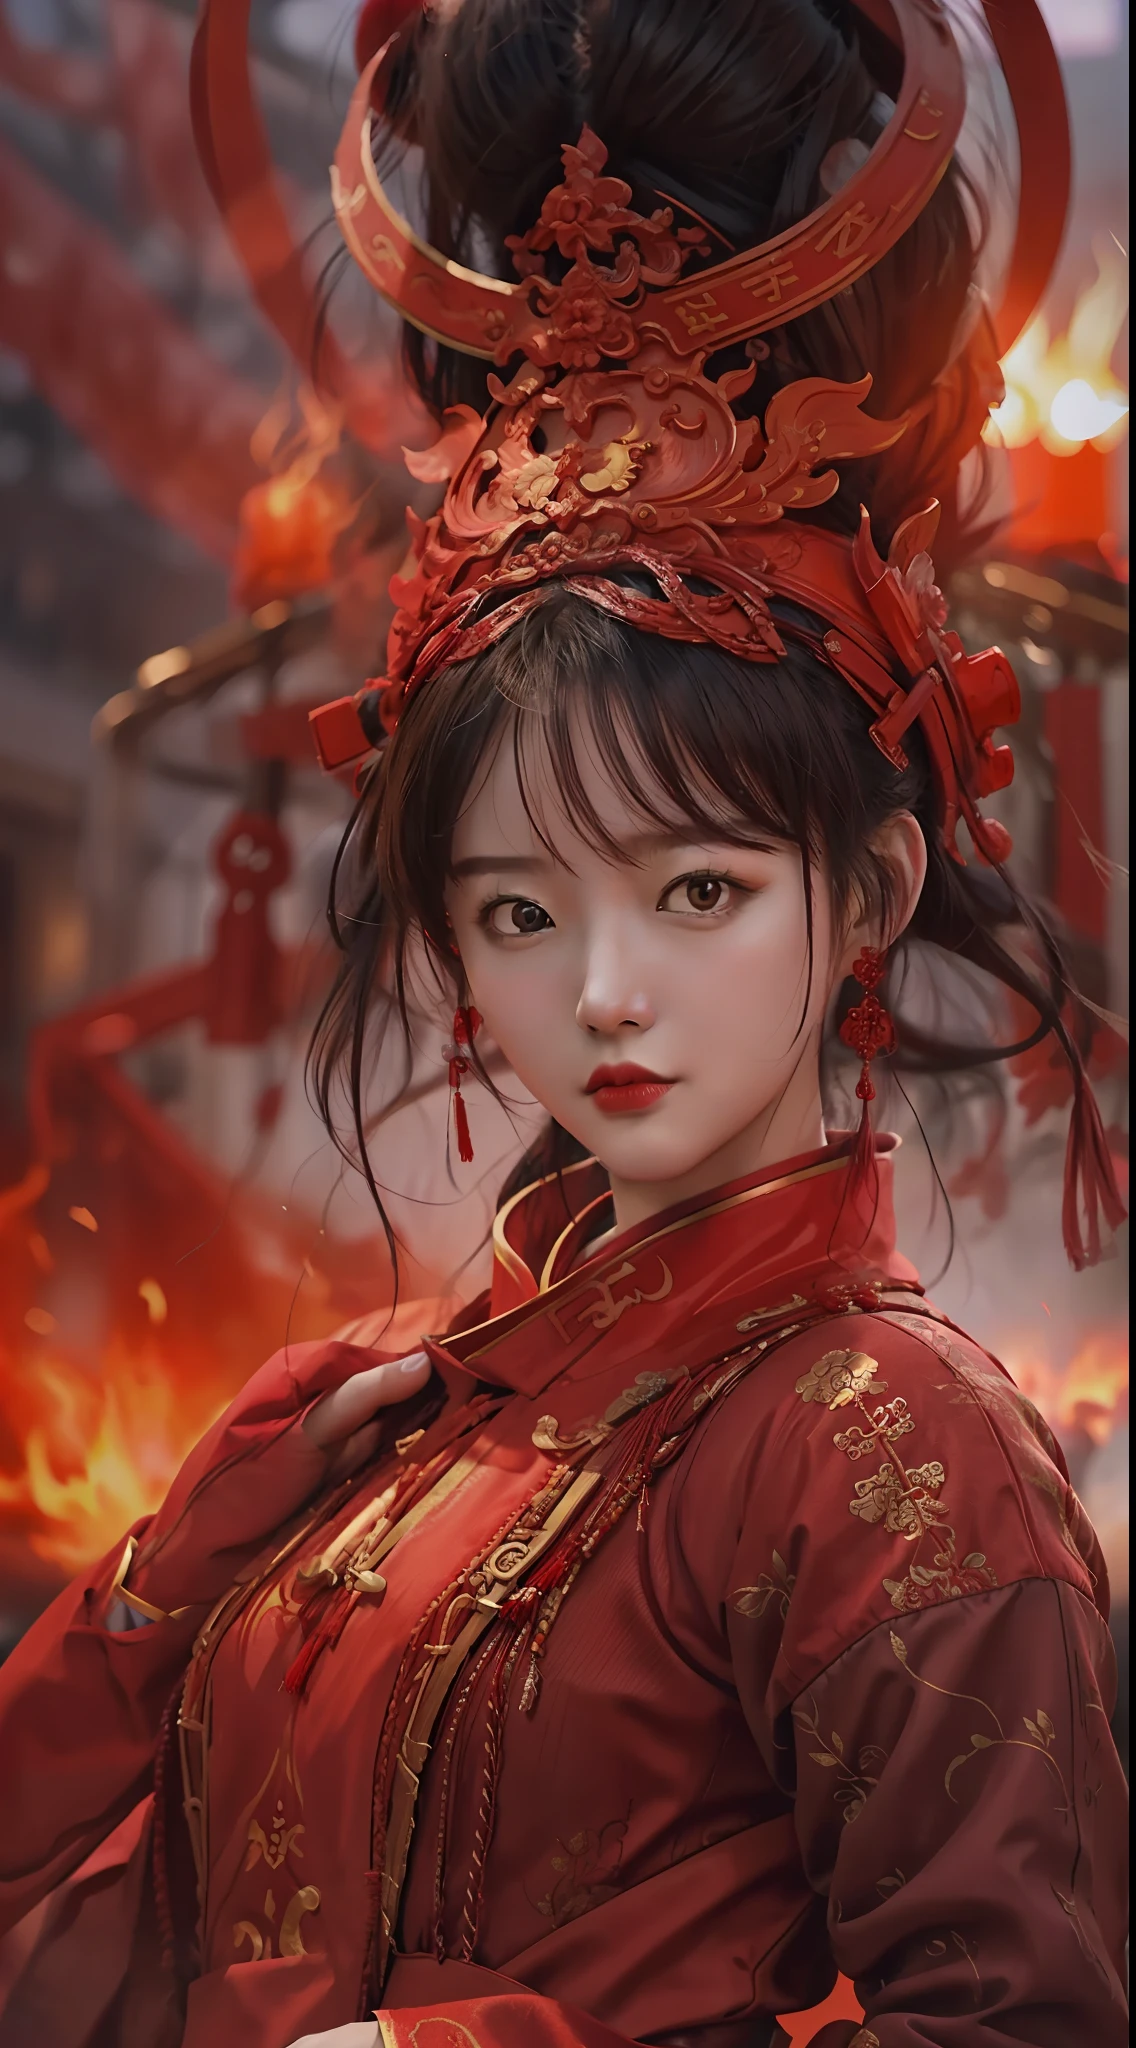 realistischer Stil，Fantastischer Bildschirm，Eine Chinesin im roten Kostüm bereitet sich auf den Kampf vor，Blick in die Kamera，Die Leute in der Umgebung kämpfen，Feuer glühen，Nahaufnahme von Menschen，Unscharfer Hintergrund，Meisterstück，hohe Qualität，8K